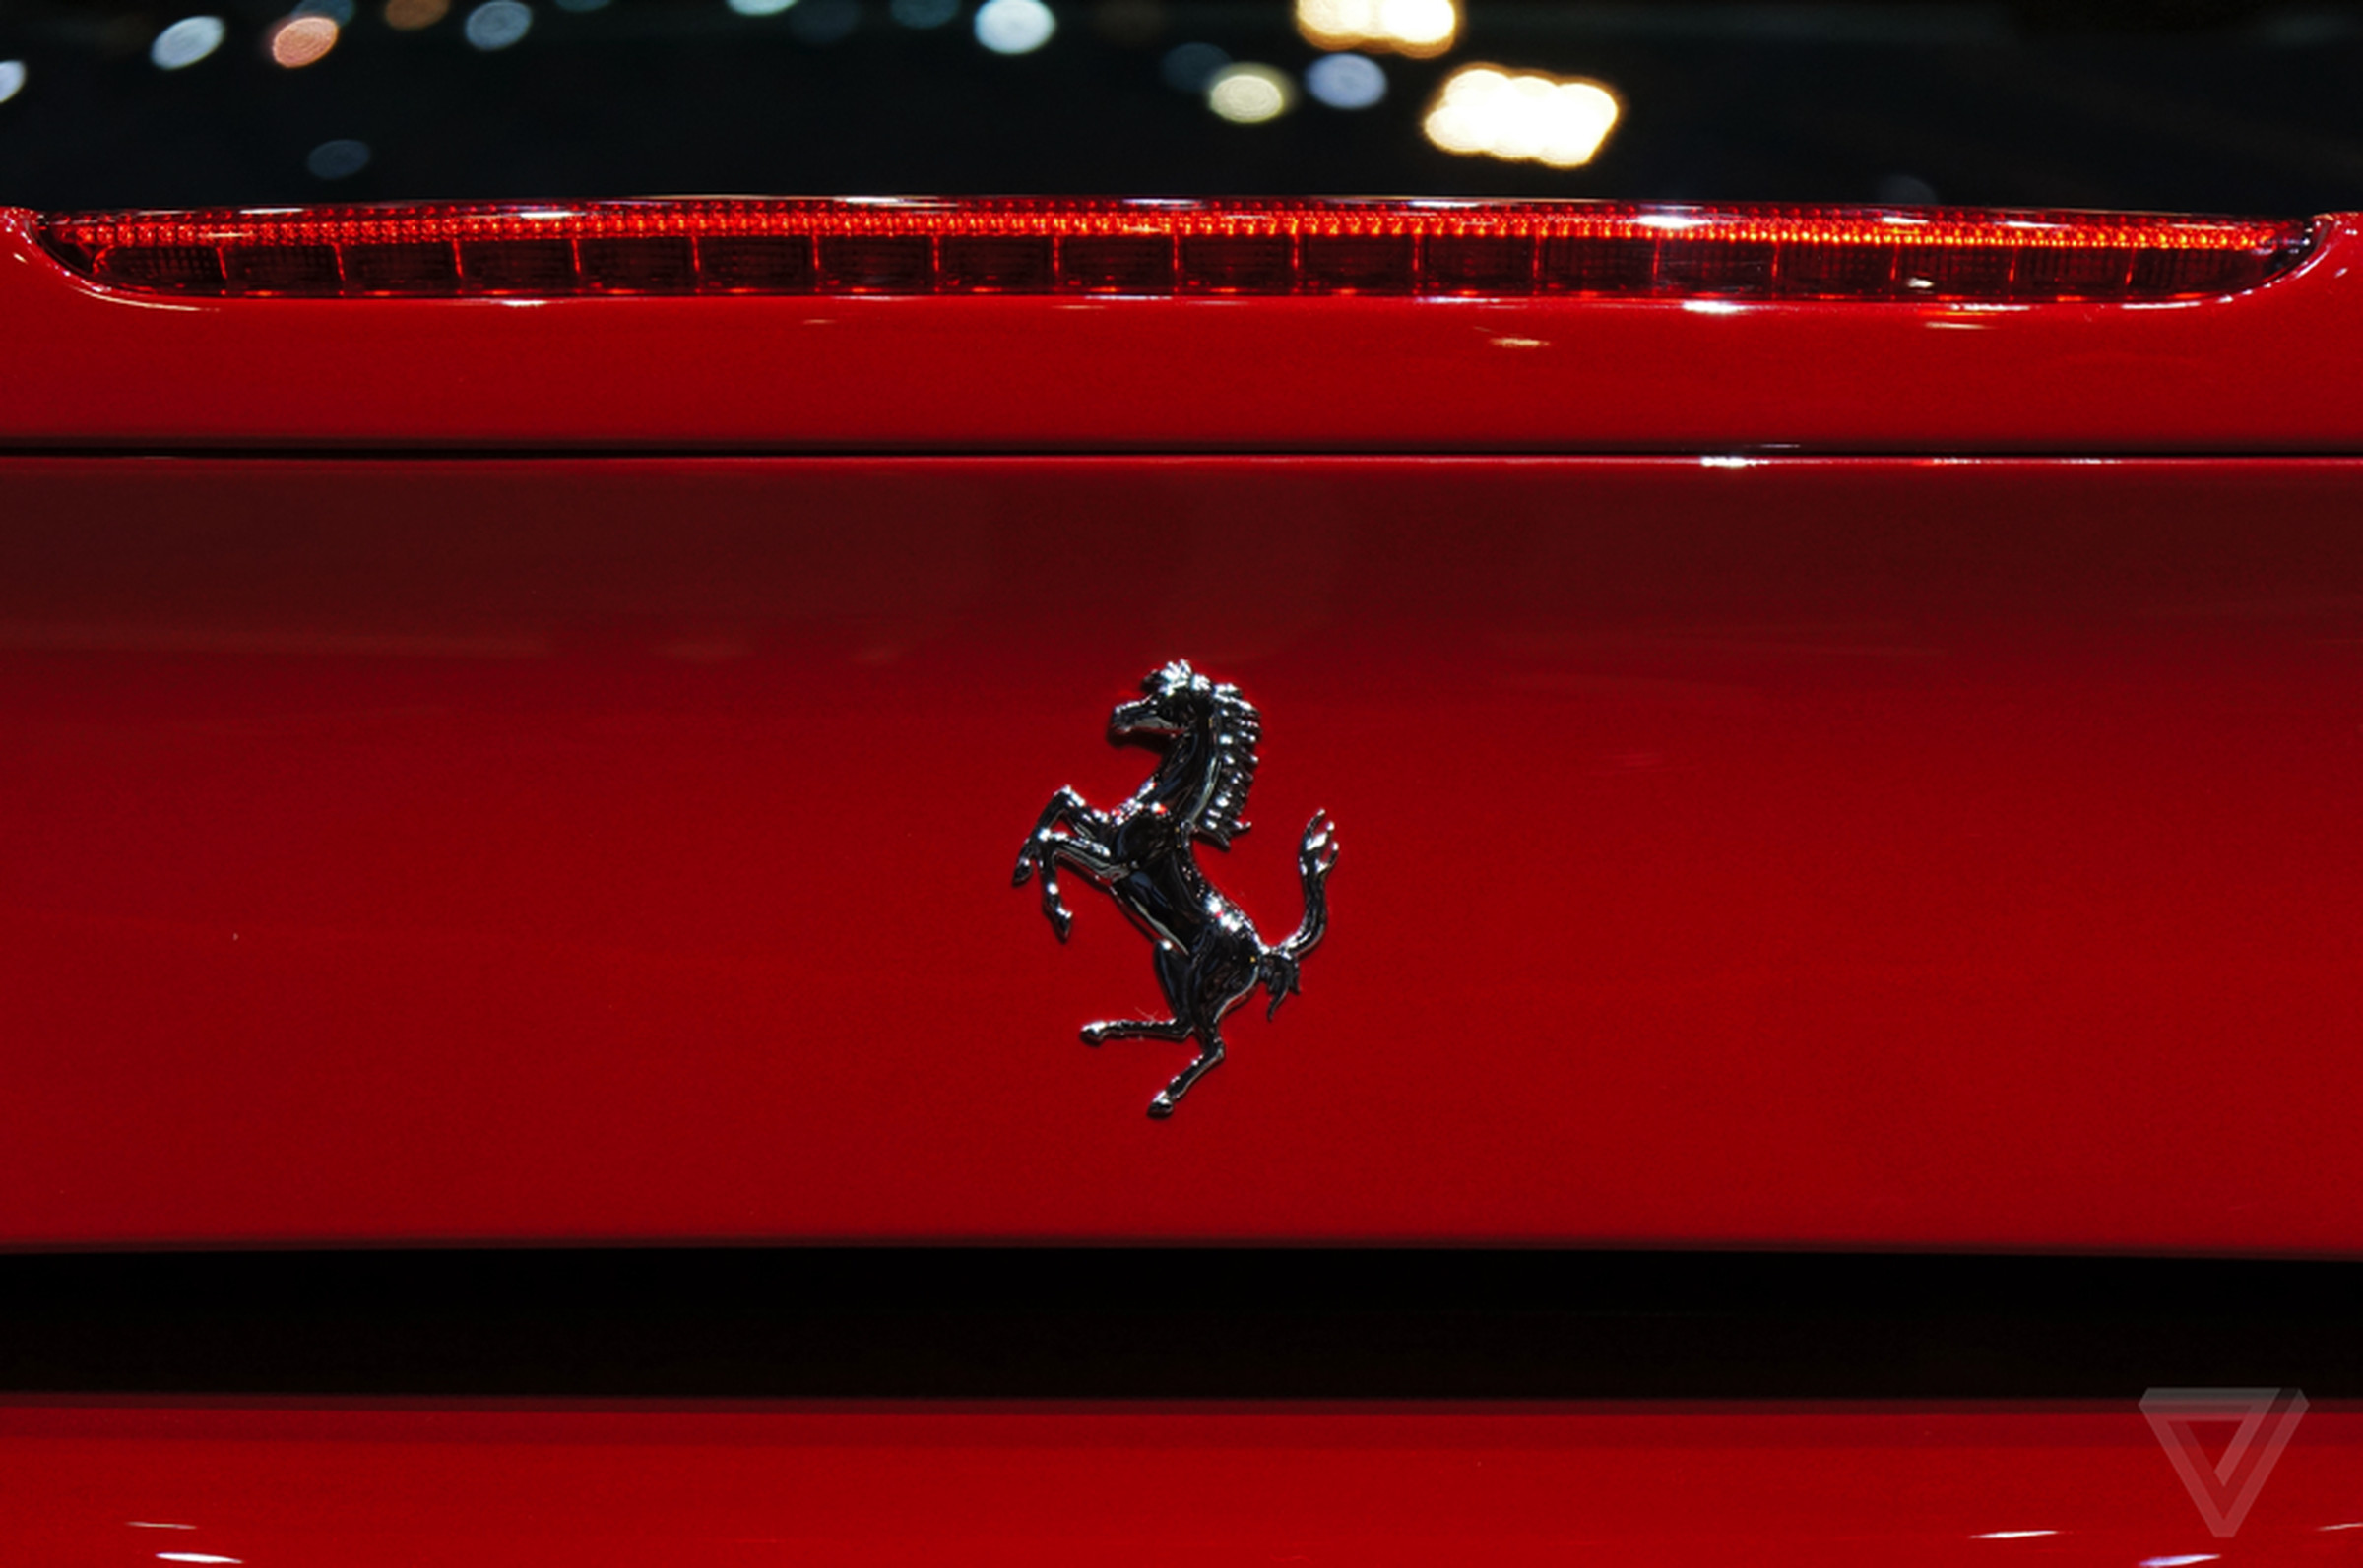 Ferrari 488 GTB at Geneva Motor Show